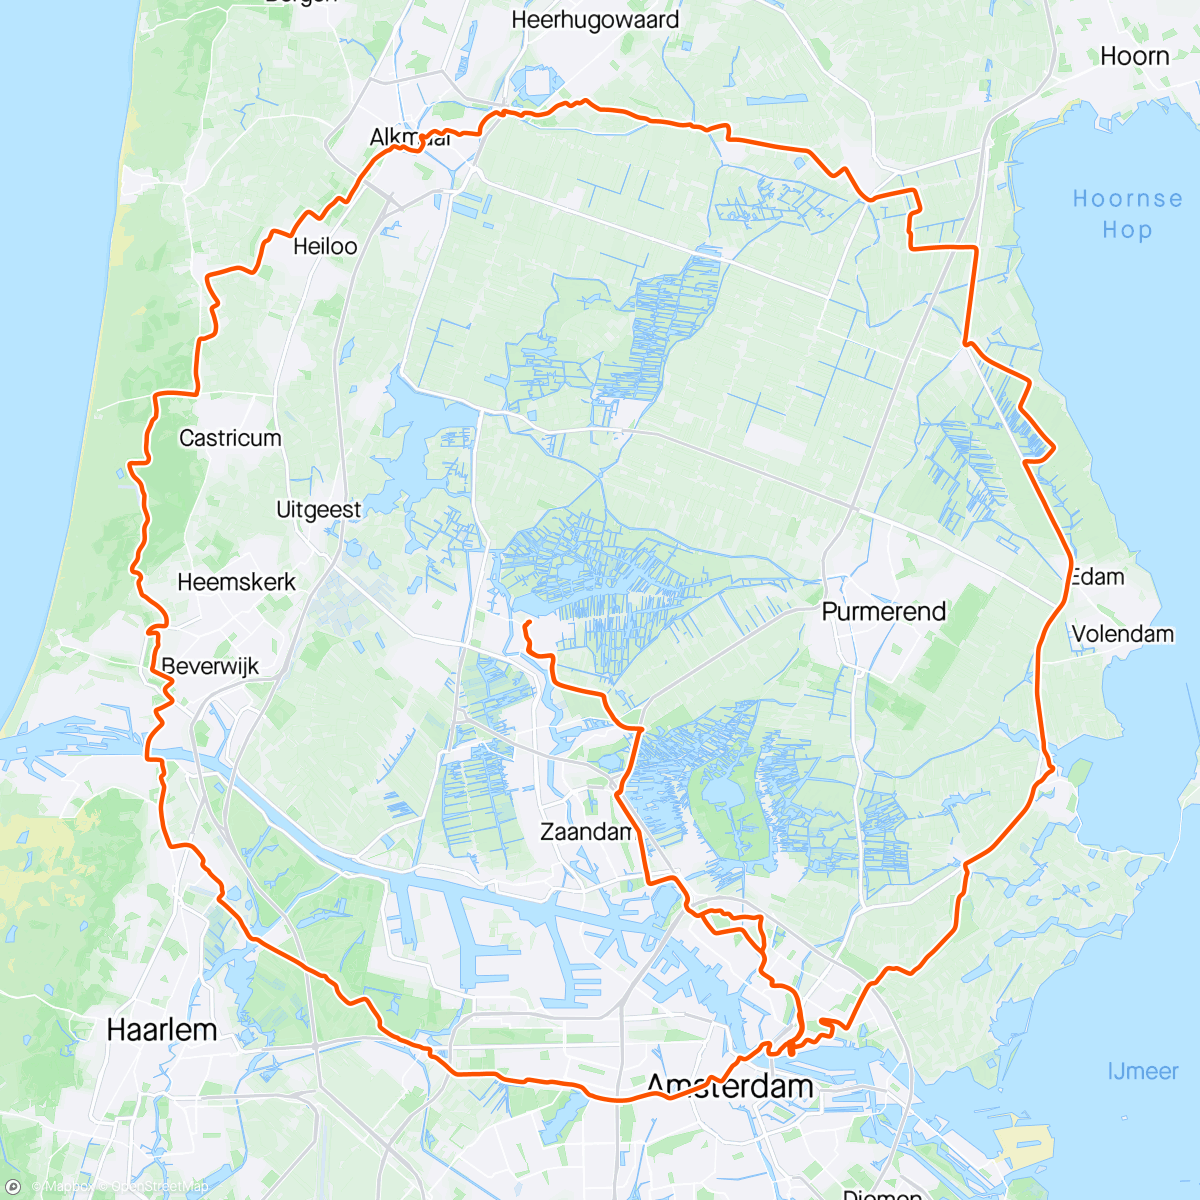 アクティビティ「Zondag Ochtendrit, @Mr.ride-A-round.cc
#deechterondevanAmsterdam 
#rondjefietsen」の地図